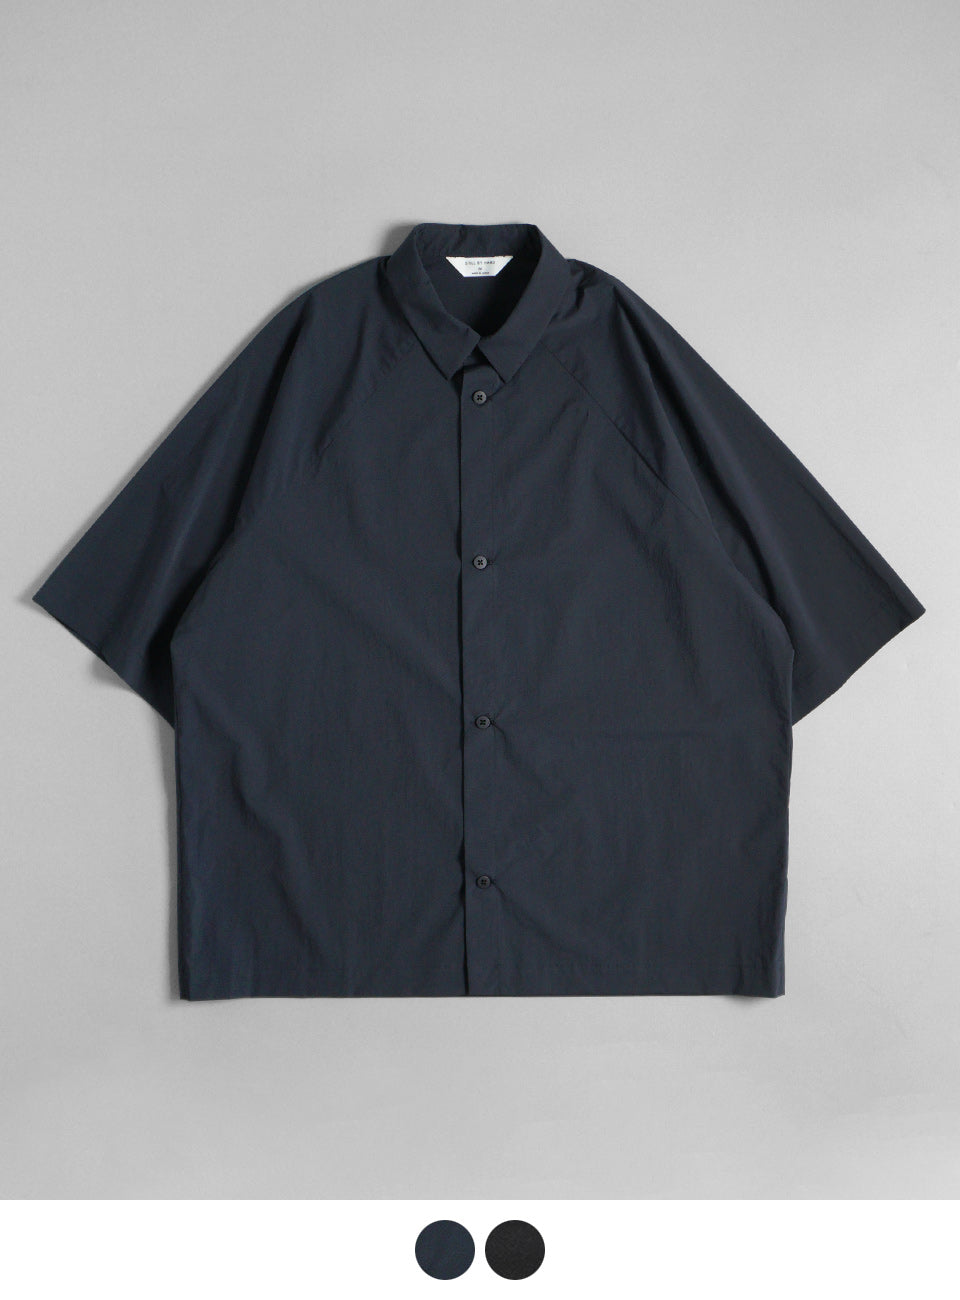 STILL BY HAND スティルバイハンド シャツ shirts 変形スリーブシャツ 羽織り SH02242【送料無料】